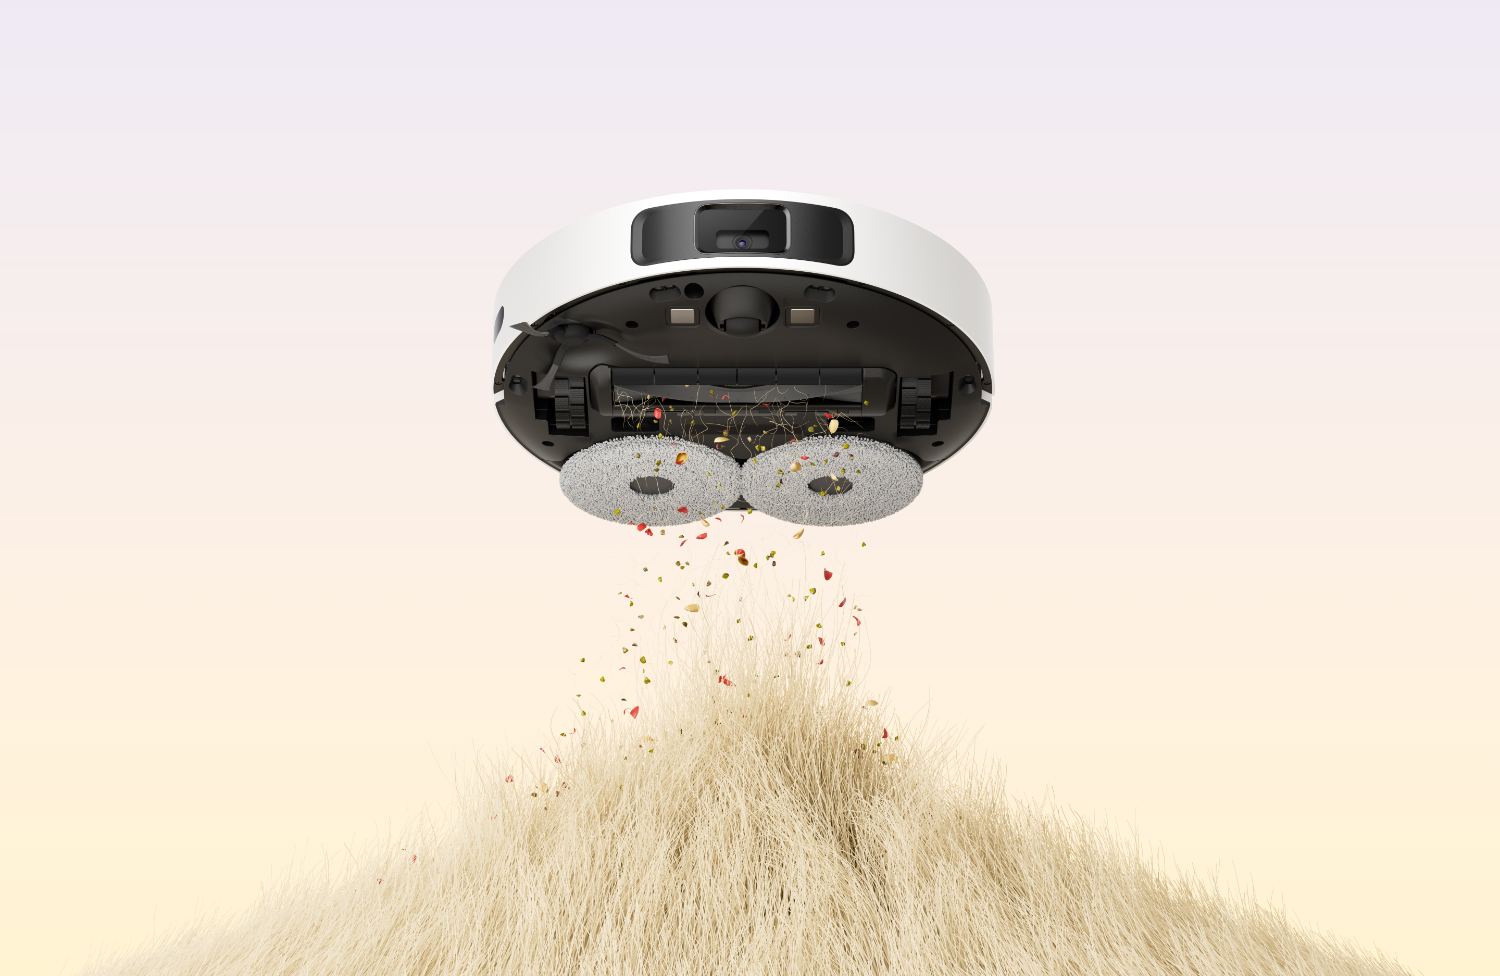 Dreame объявила скидки на флагманские моющие роботы-пылесосы